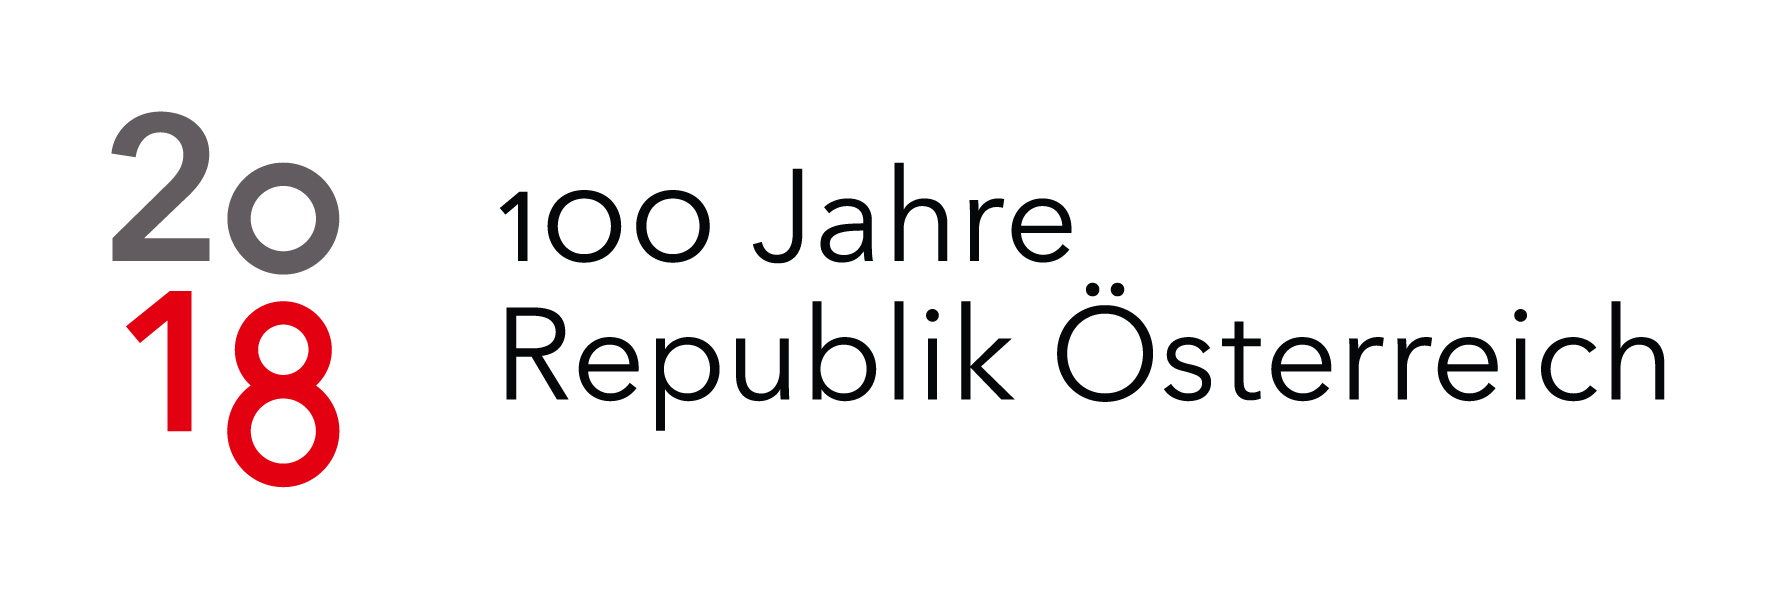 2018 - 100 Jahre Republik Österreich